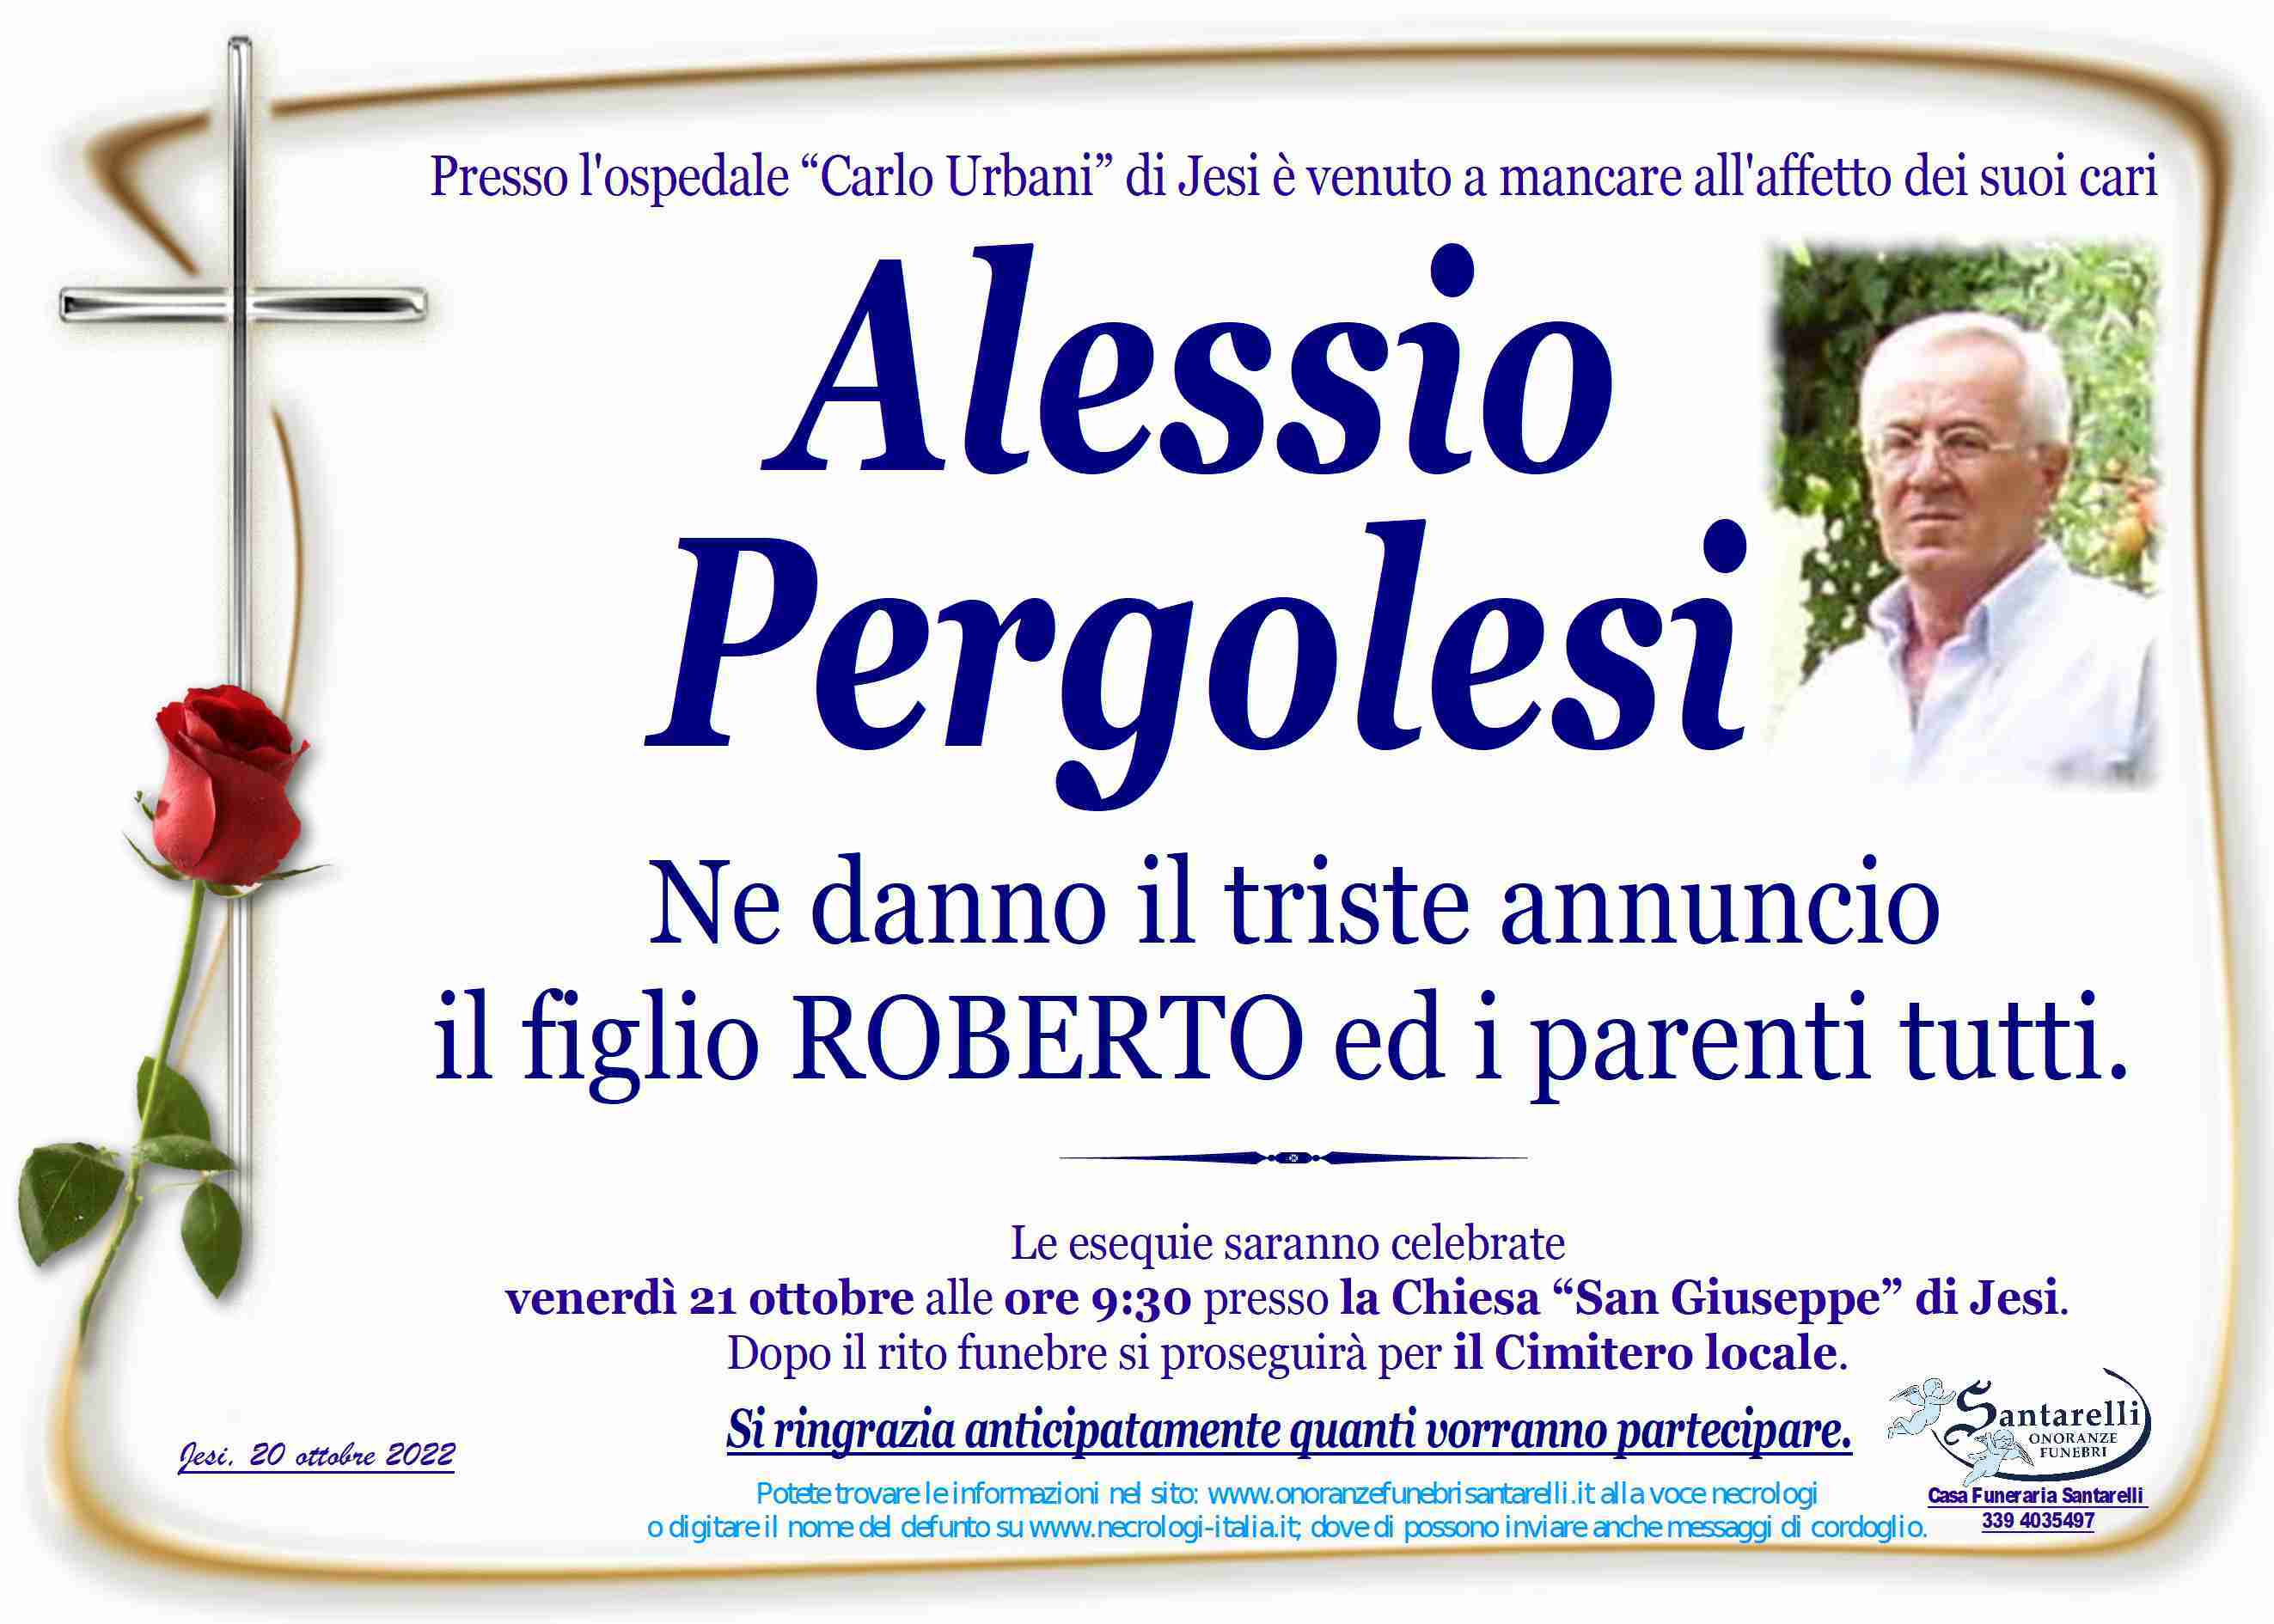 Alessio Pergolesi